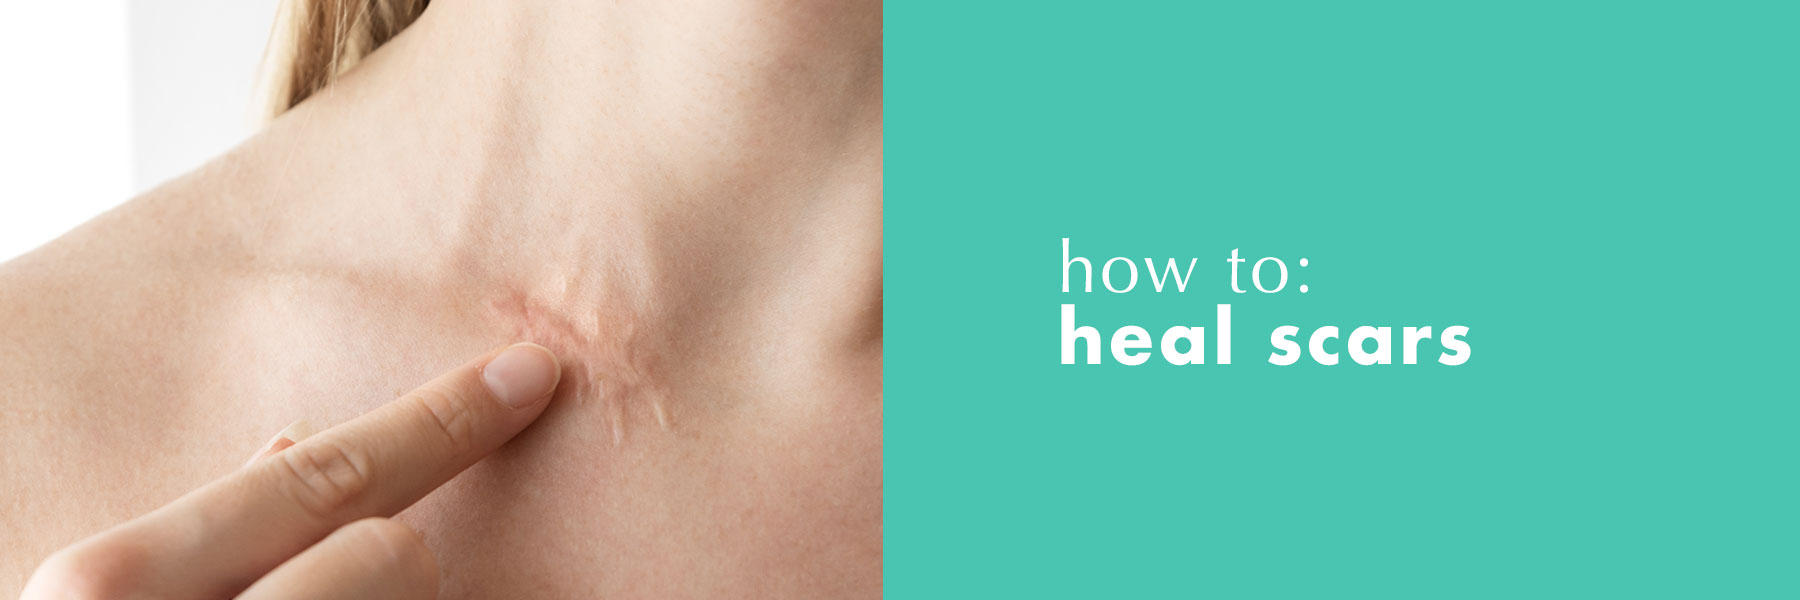 How to heal irritated skin